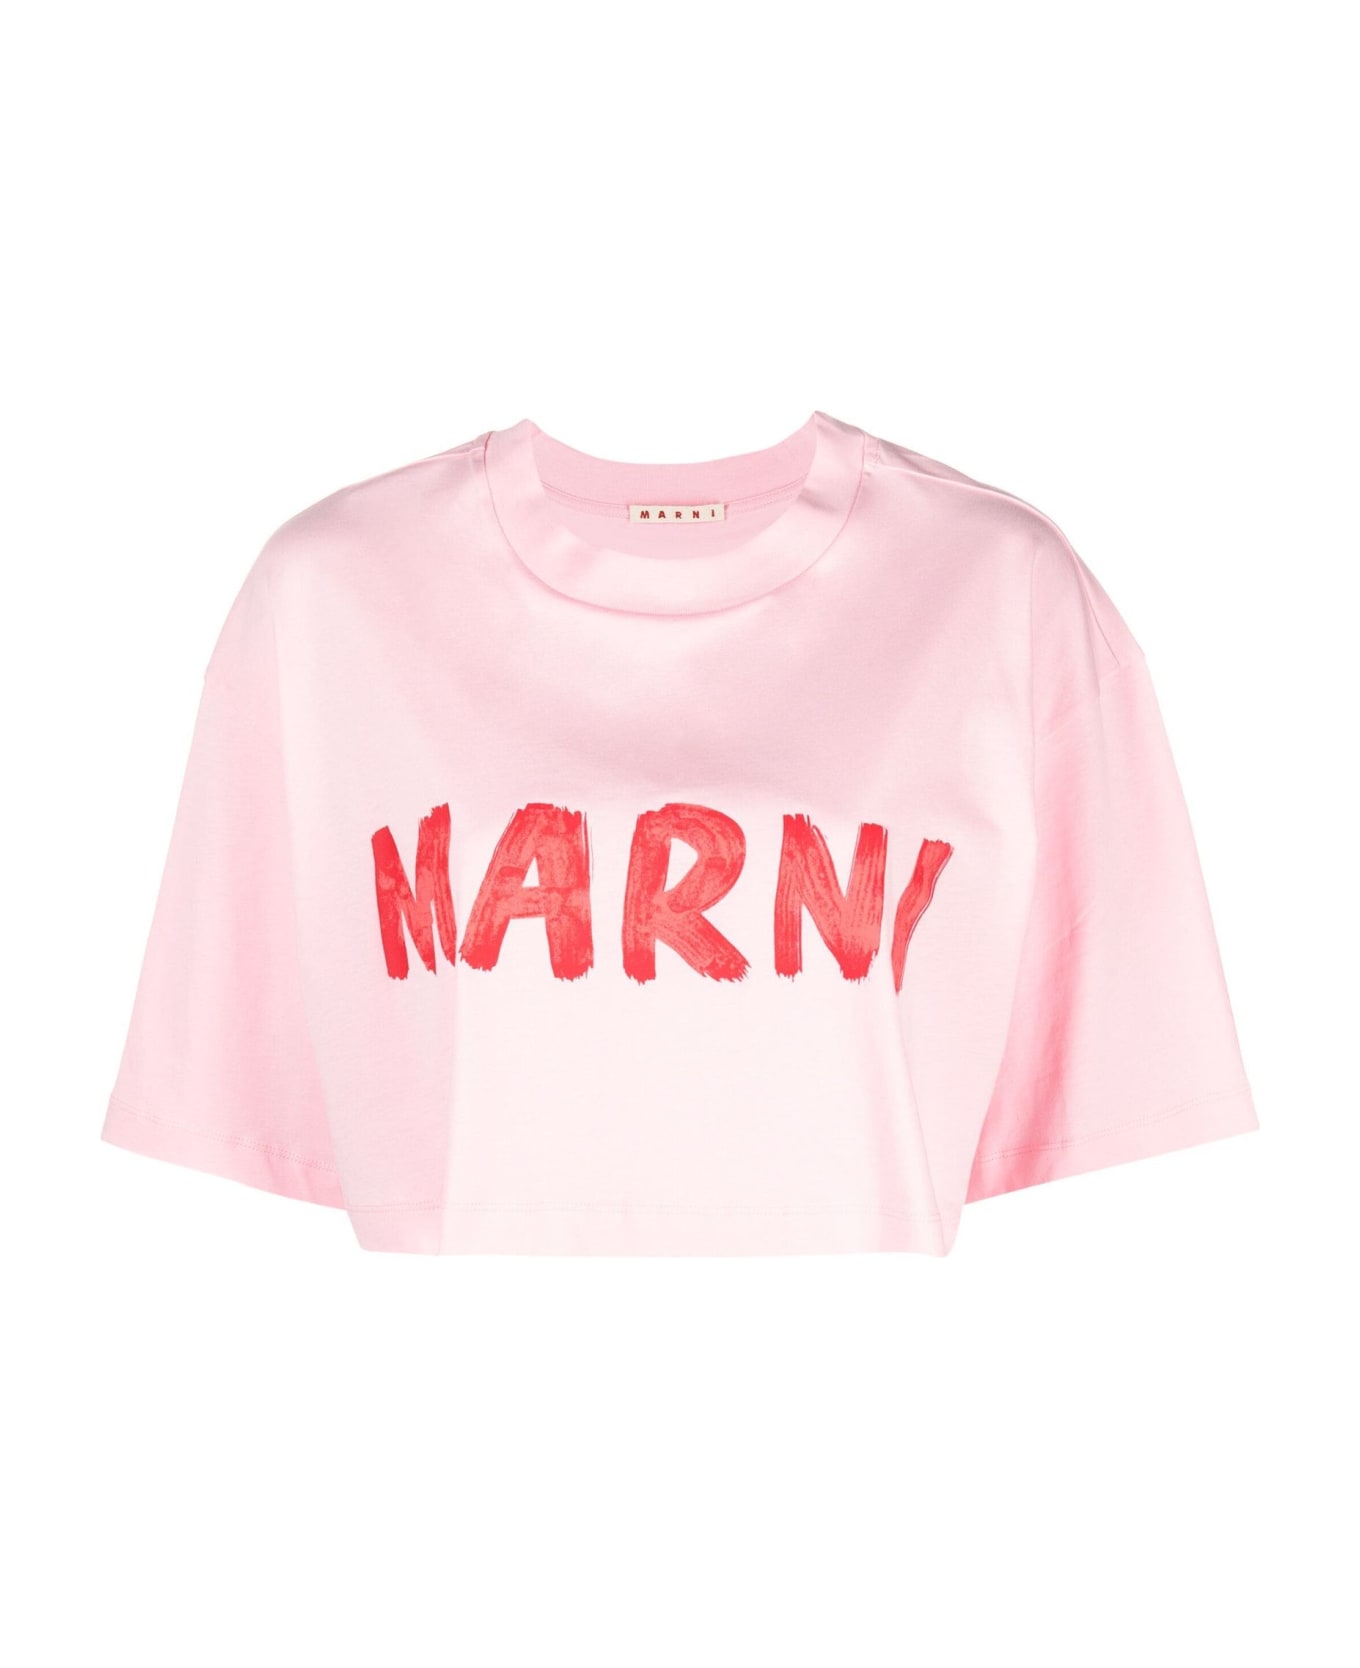 Marni Pink Organic Cotton Jersey T-shirt - Cinder rose トップス